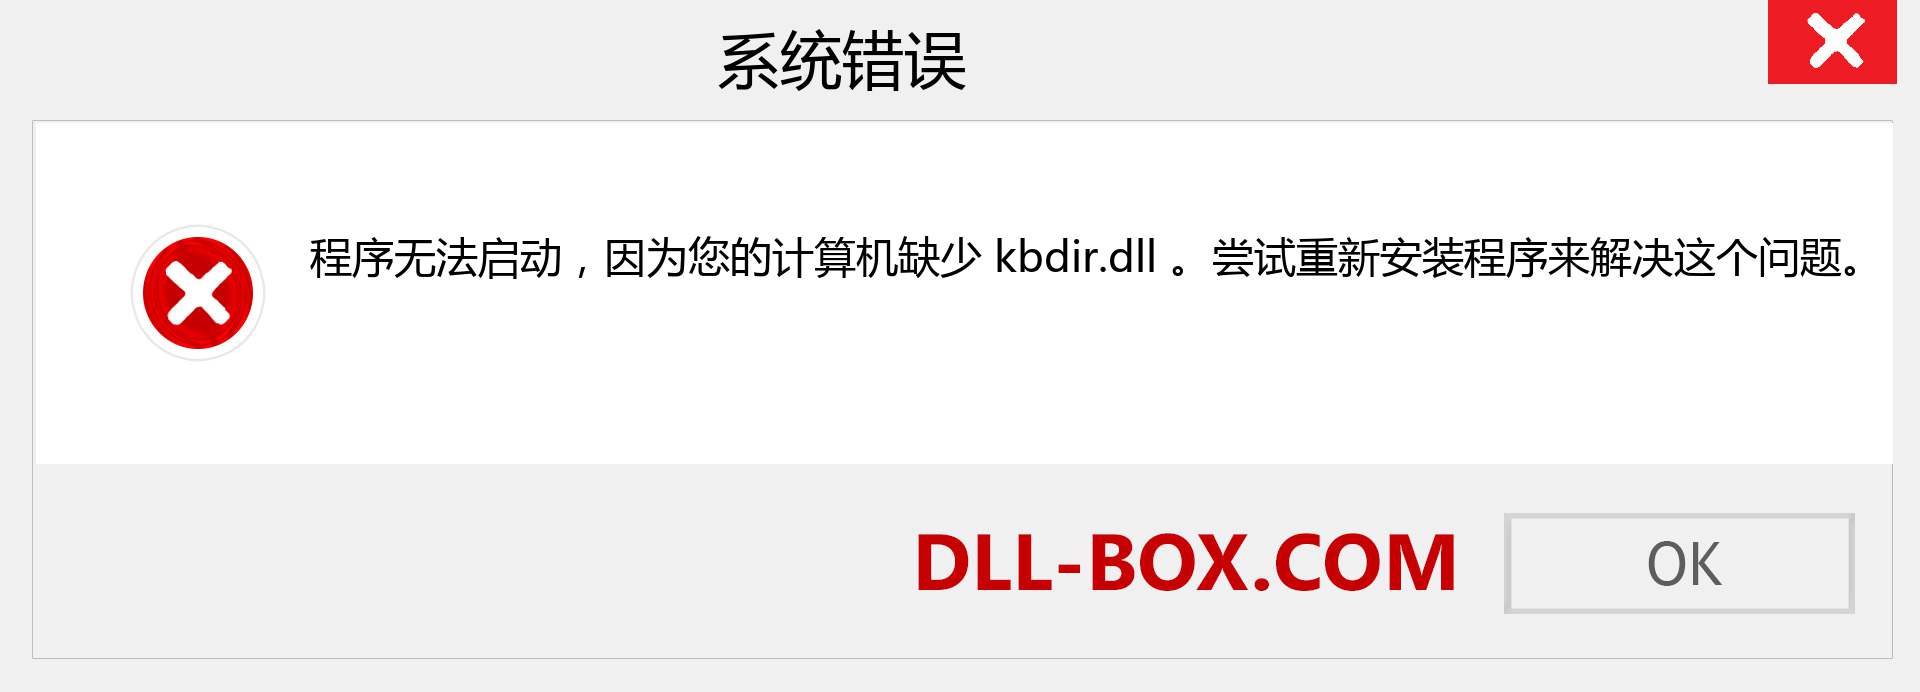 kbdir.dll 文件丢失？。 适用于 Windows 7、8、10 的下载 - 修复 Windows、照片、图像上的 kbdir dll 丢失错误